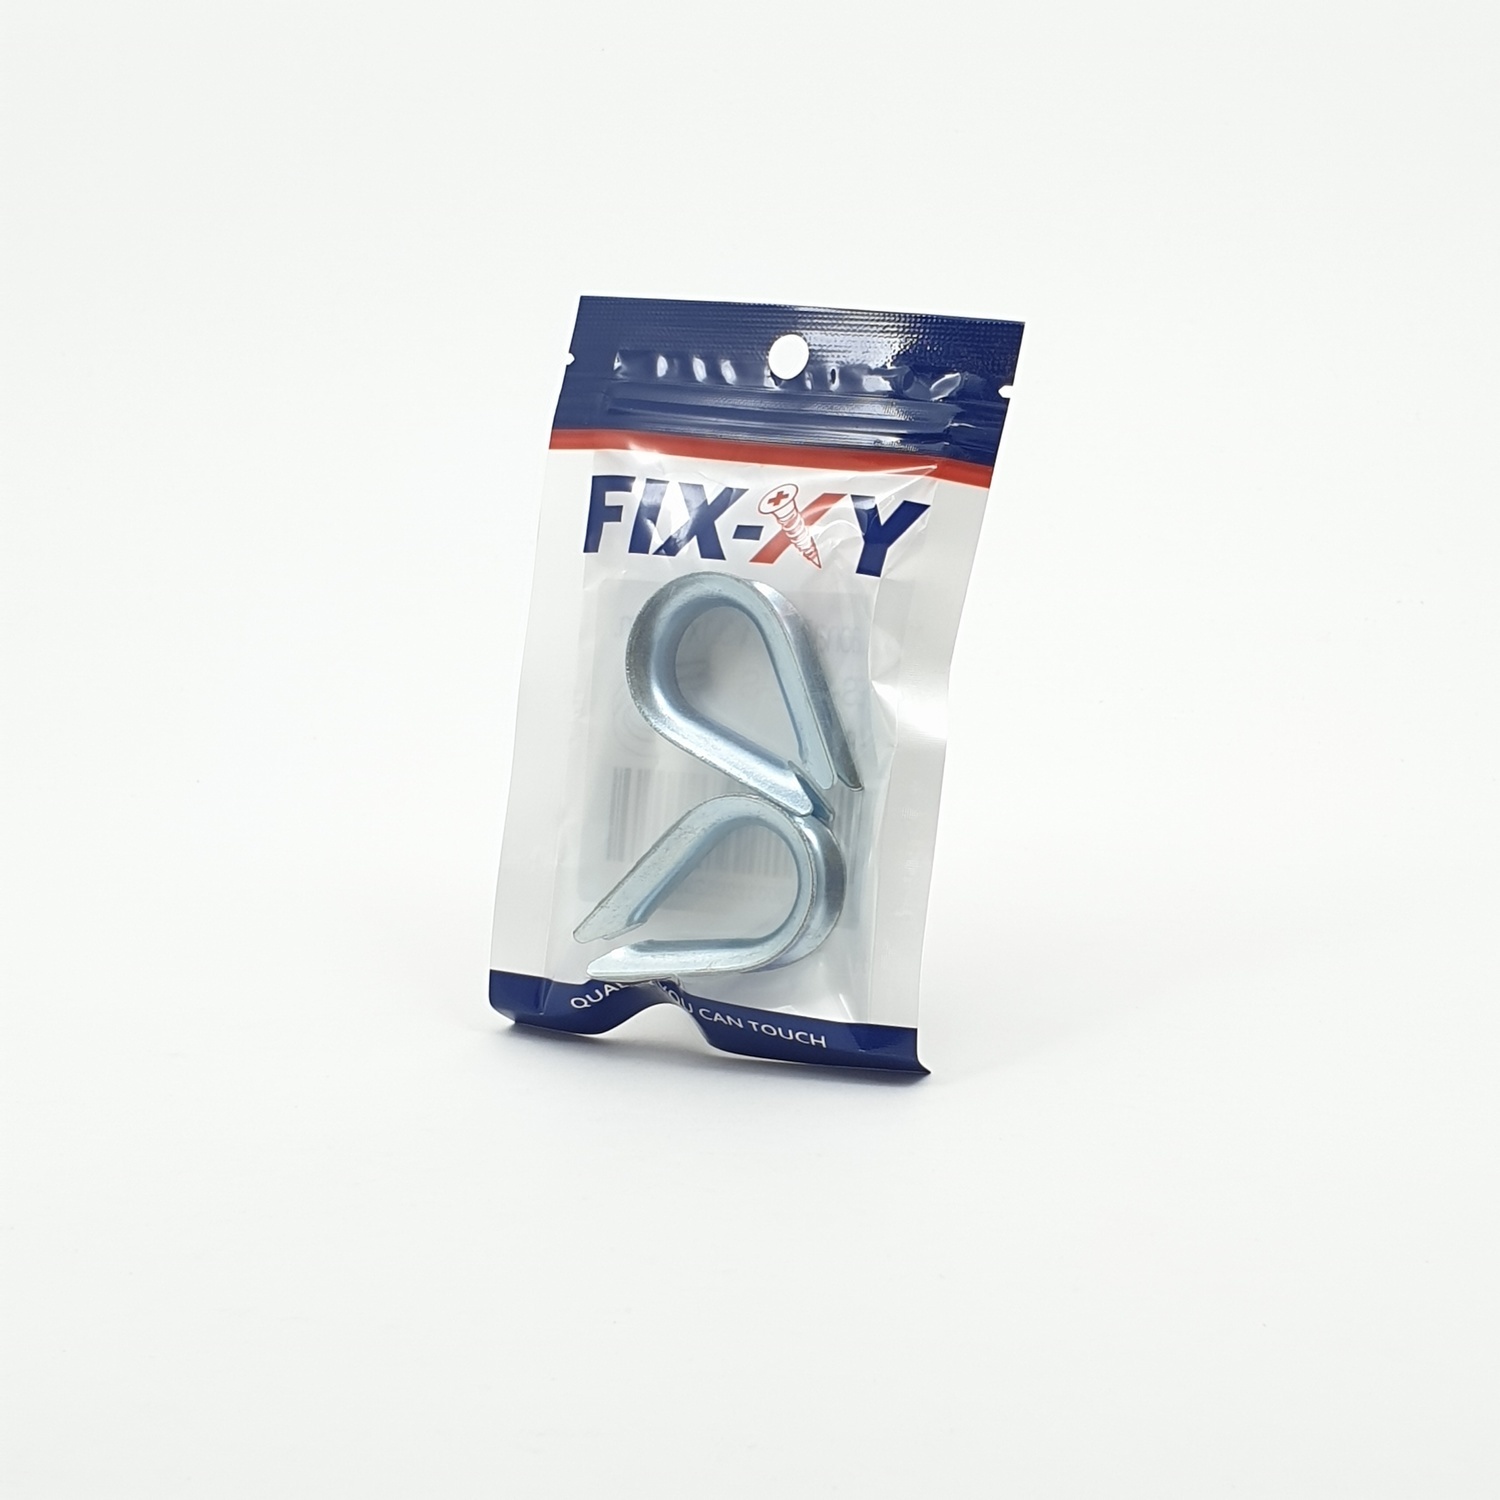 FIX-XY ปลอกสลิง 4.8x3.1x1cm. (2ชิ้น/แพ็ค) ES-002-S 